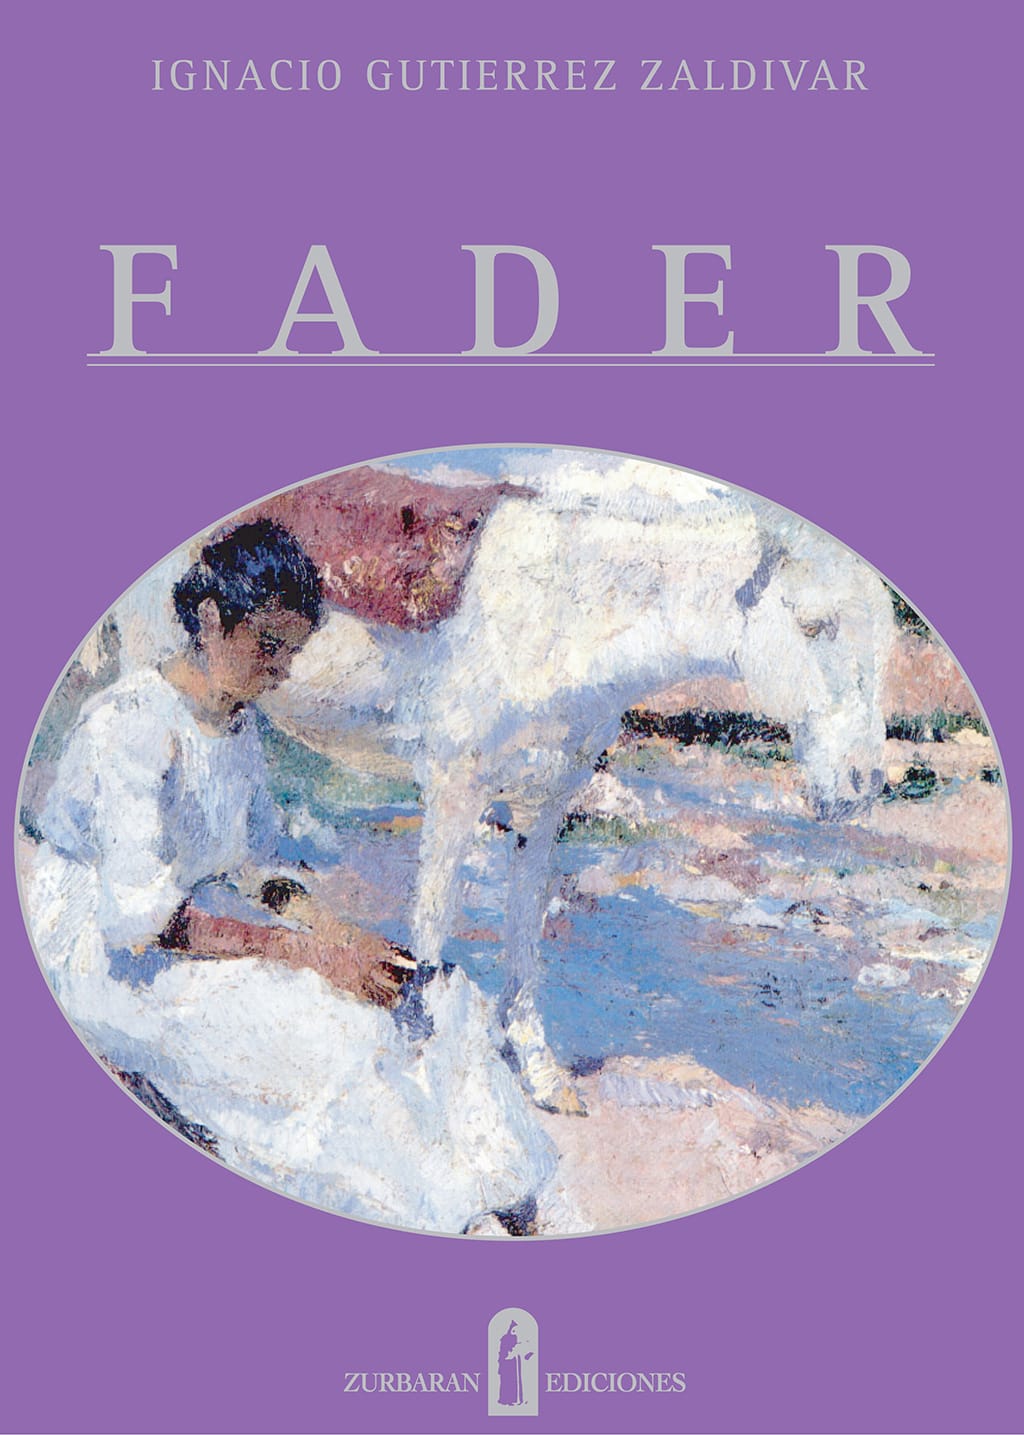 2001-Tapa-libro-Fader.jpg